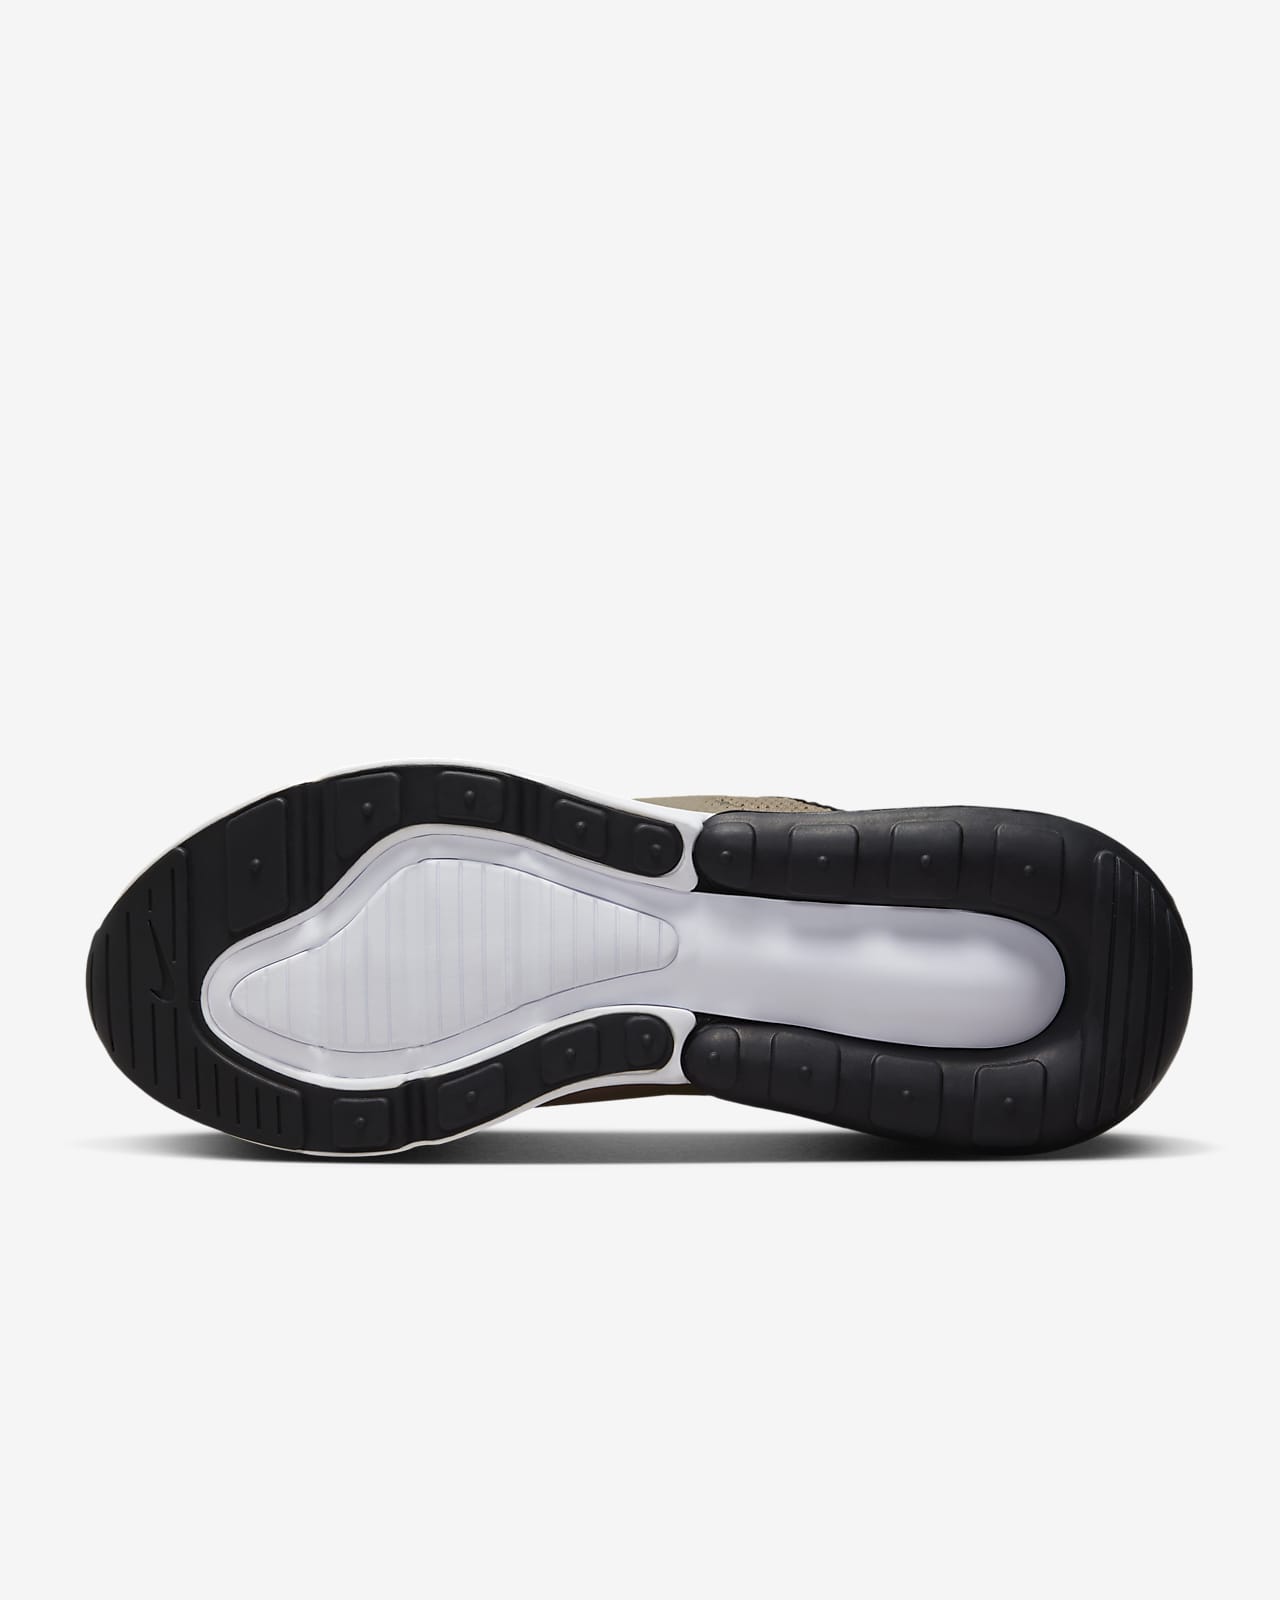 Nike Men's Air Max 270 Shoes